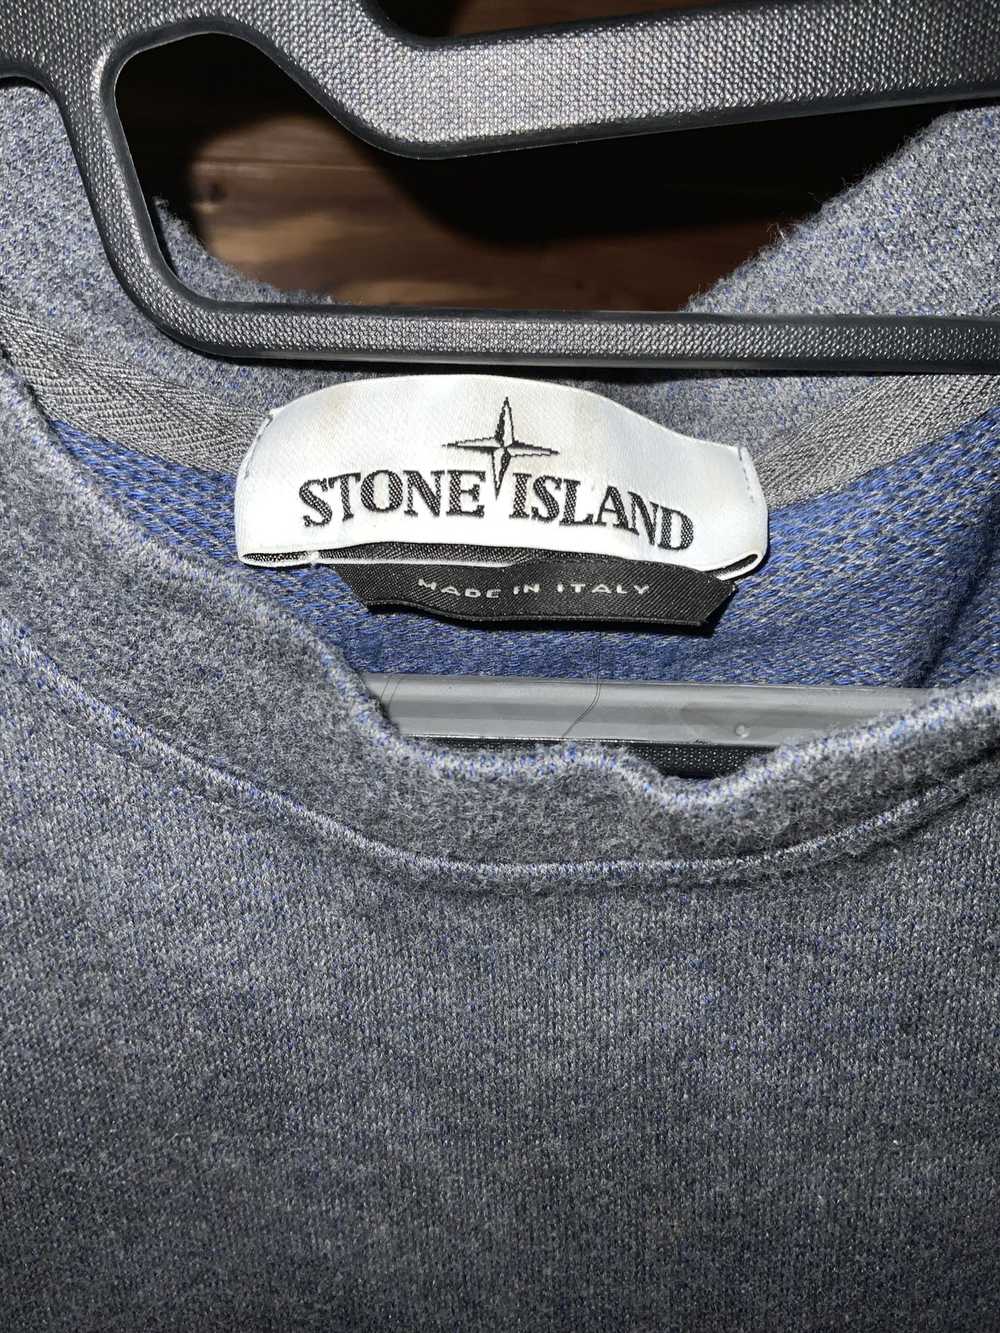 Stone Island Stone Island crewneck / sweater style - image 5